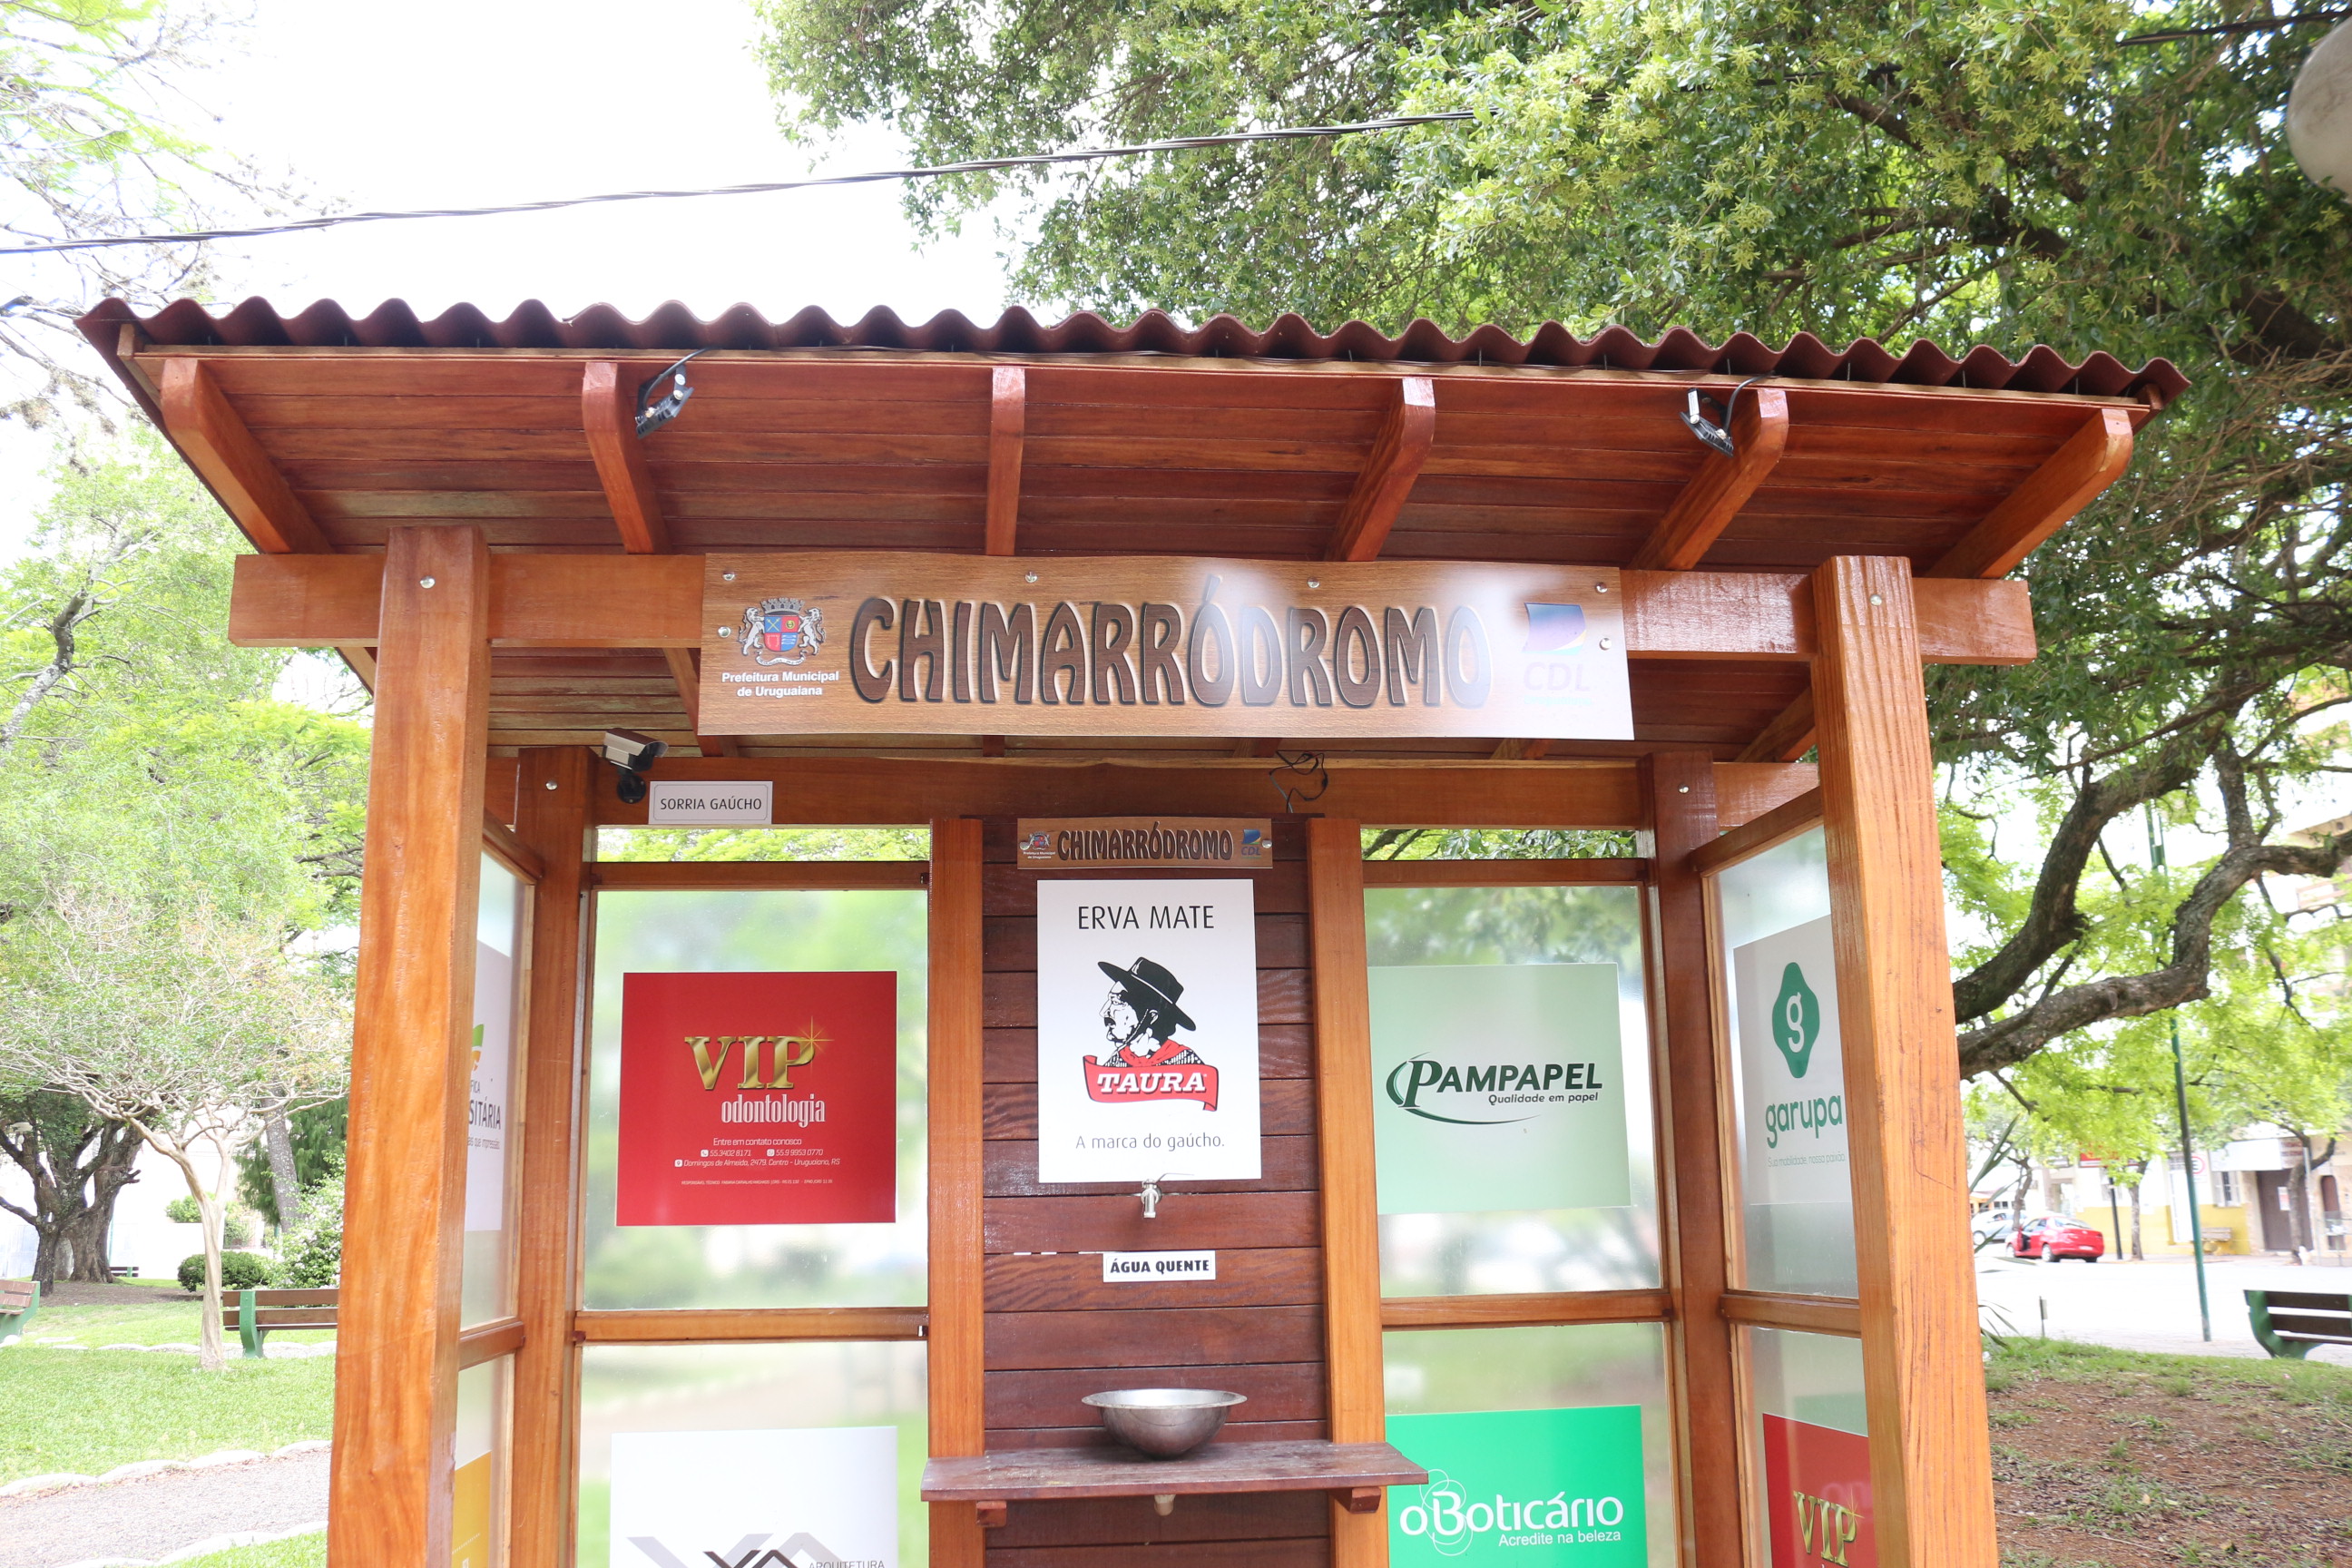 Chimarródromo levará o nome de Biratucho